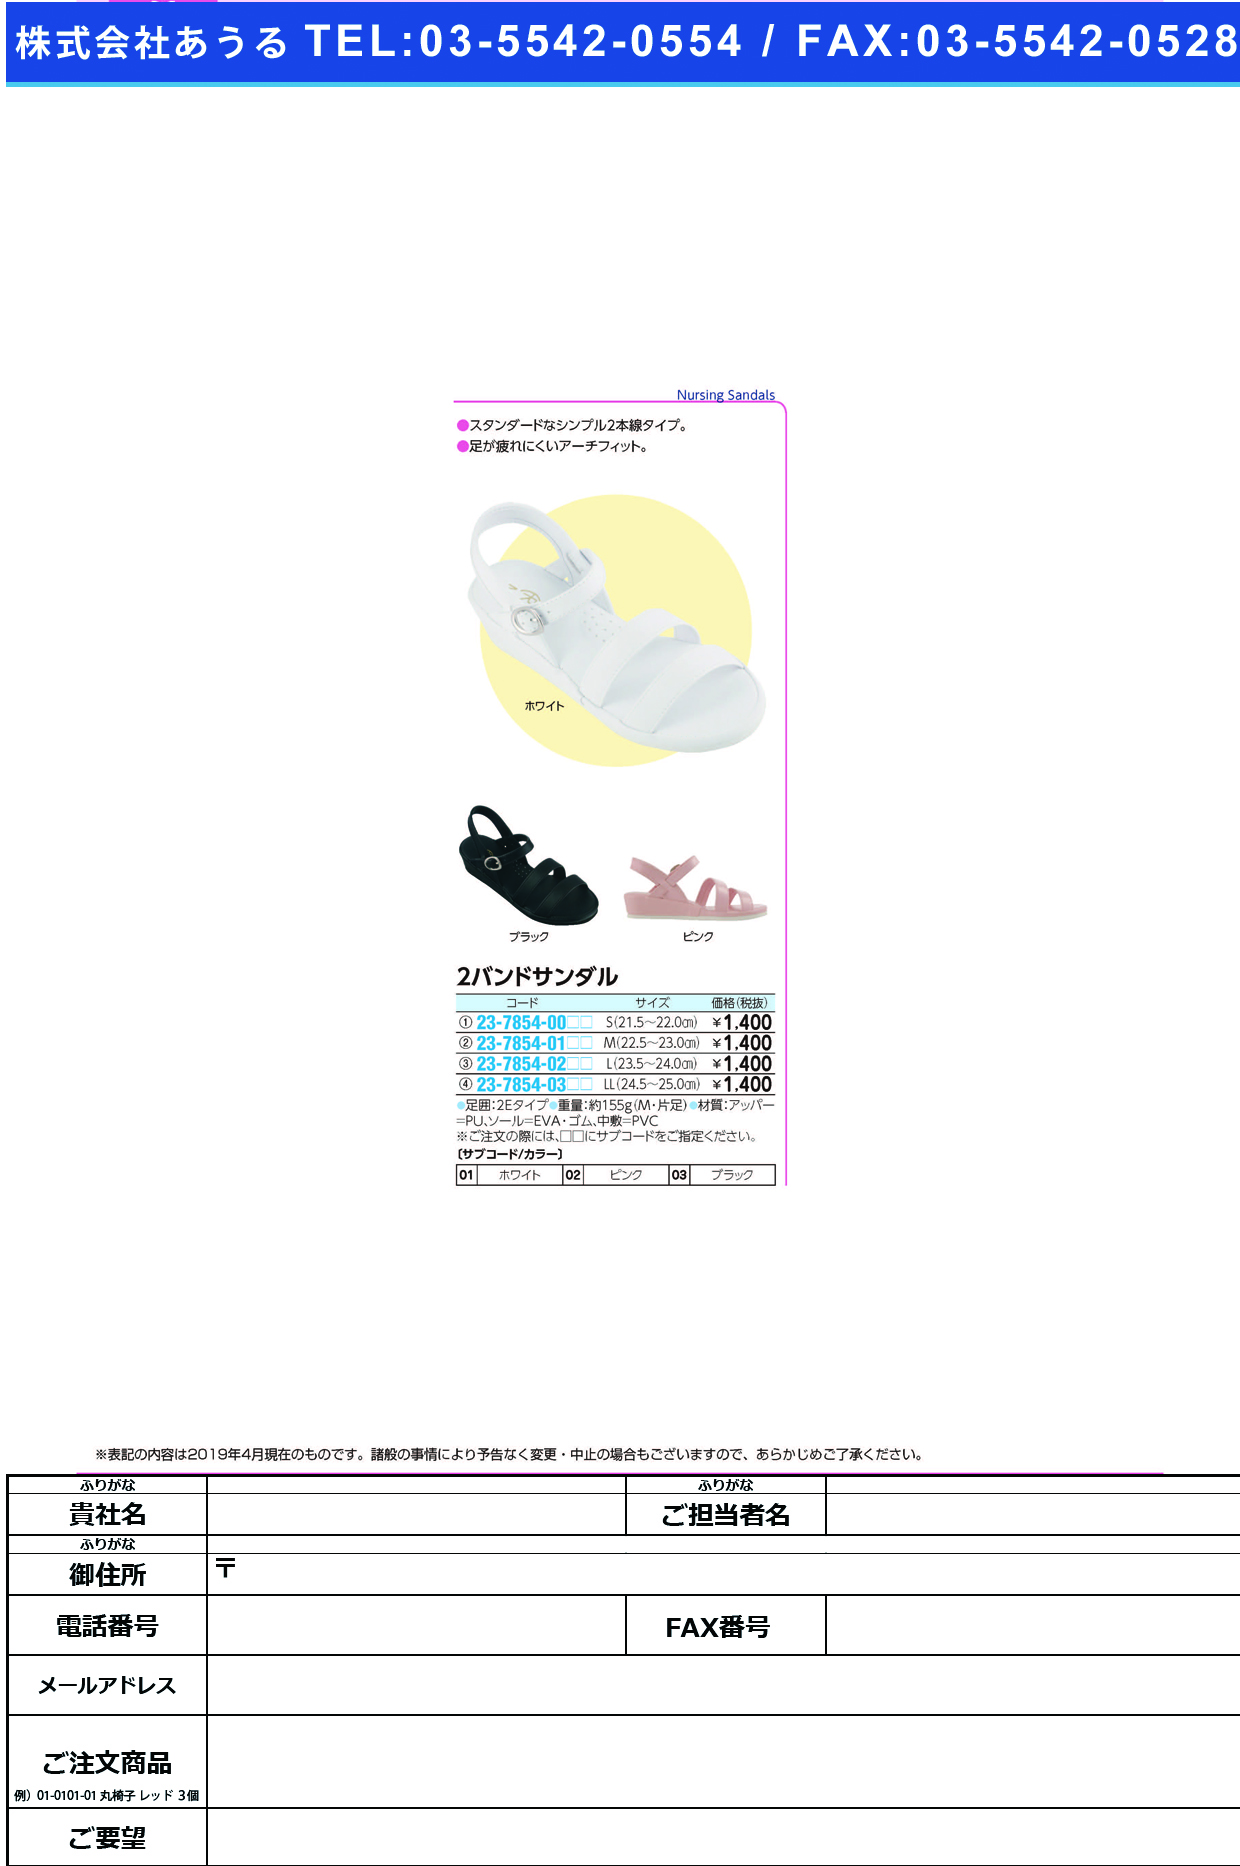 (23-7854-03)２バンドサンダル LL(24.5-25.0CM) ﾂｰﾊﾞﾝﾄﾞｻﾝﾀﾞﾙ ブラック(ファーストレイト)【1箱単位】【2019年カタログ商品】